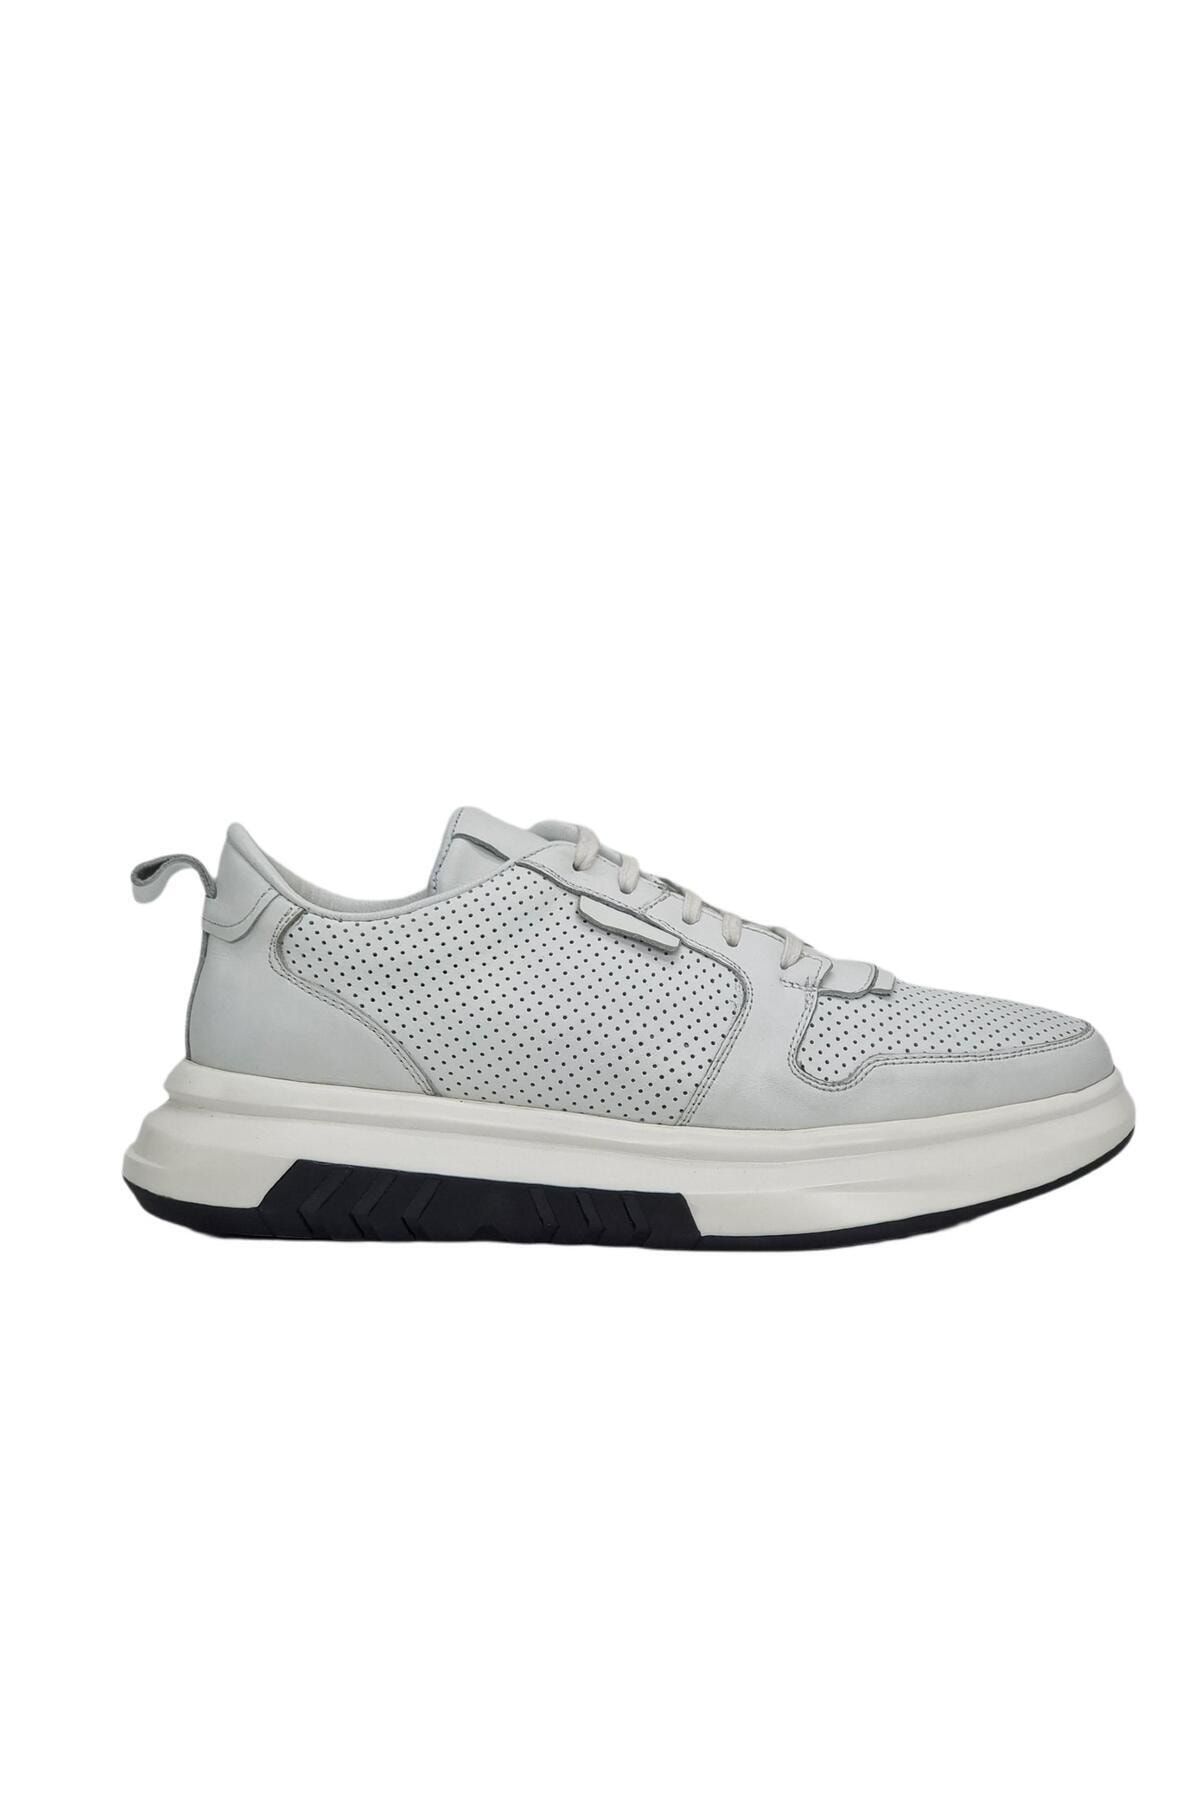 Özbağcı Erkek Deri Sneaker Ayakkabı - I1986-1 M 1000 Beyaz